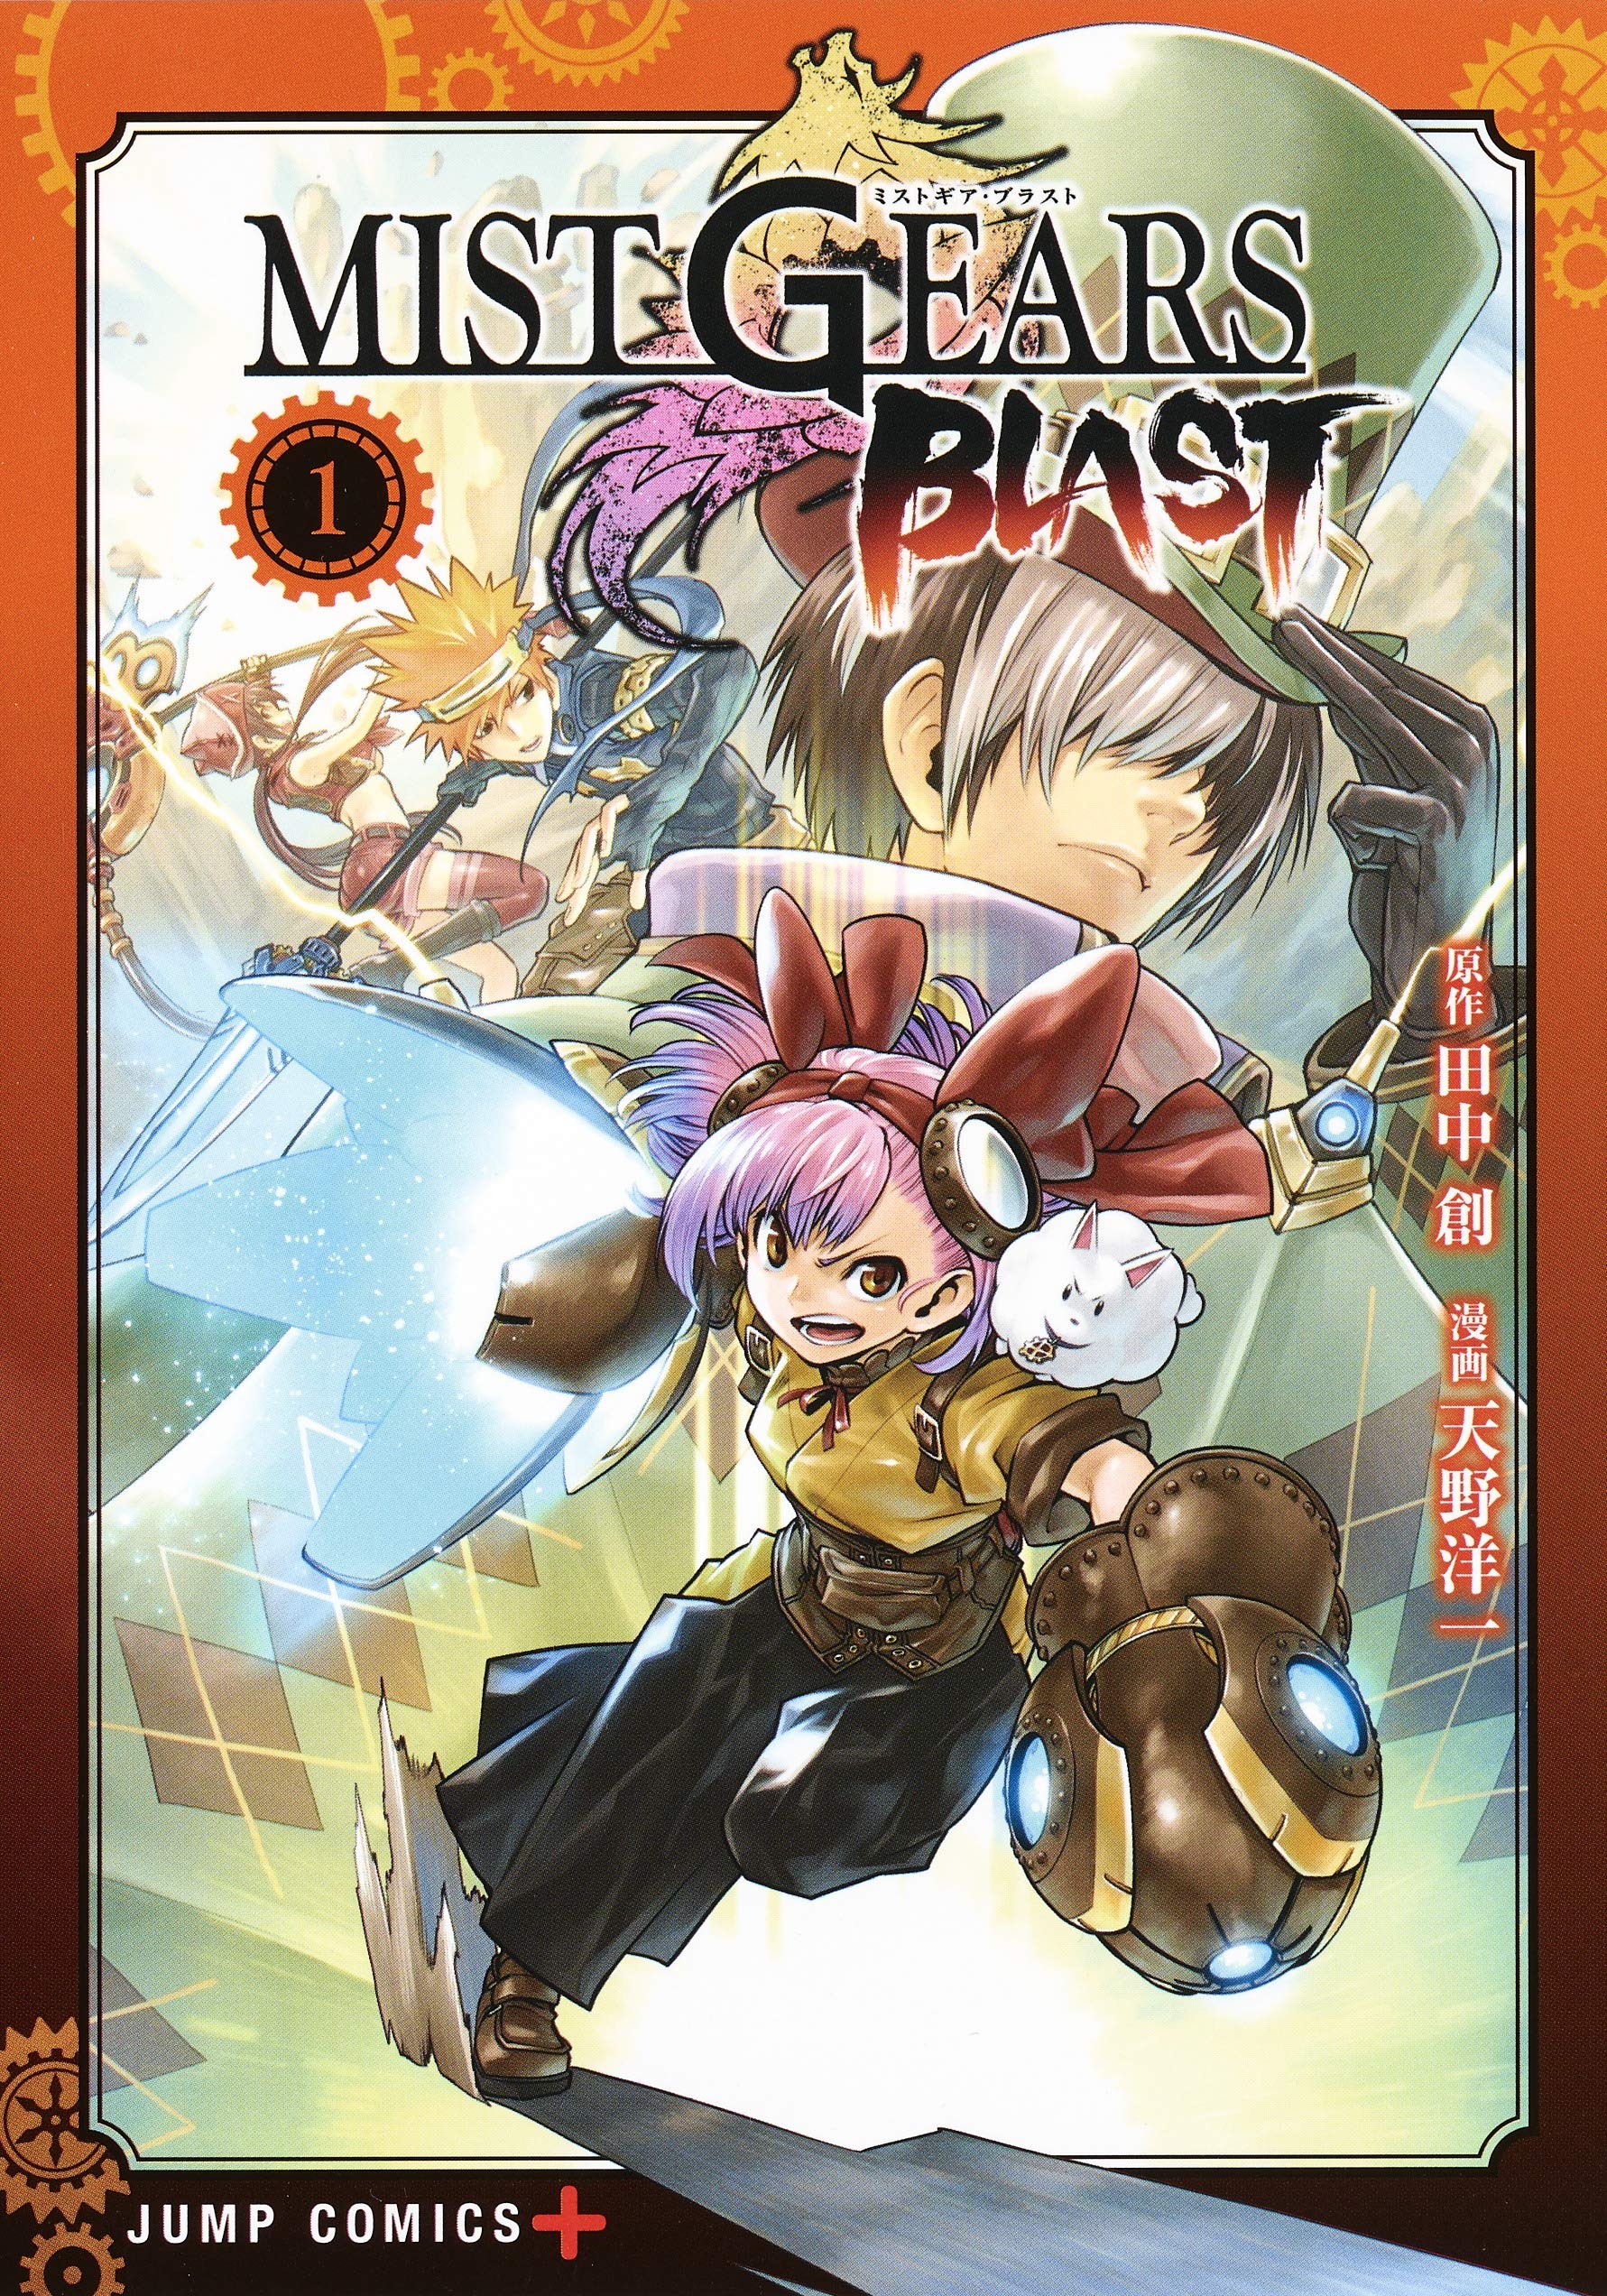 Mist gears blast Manga